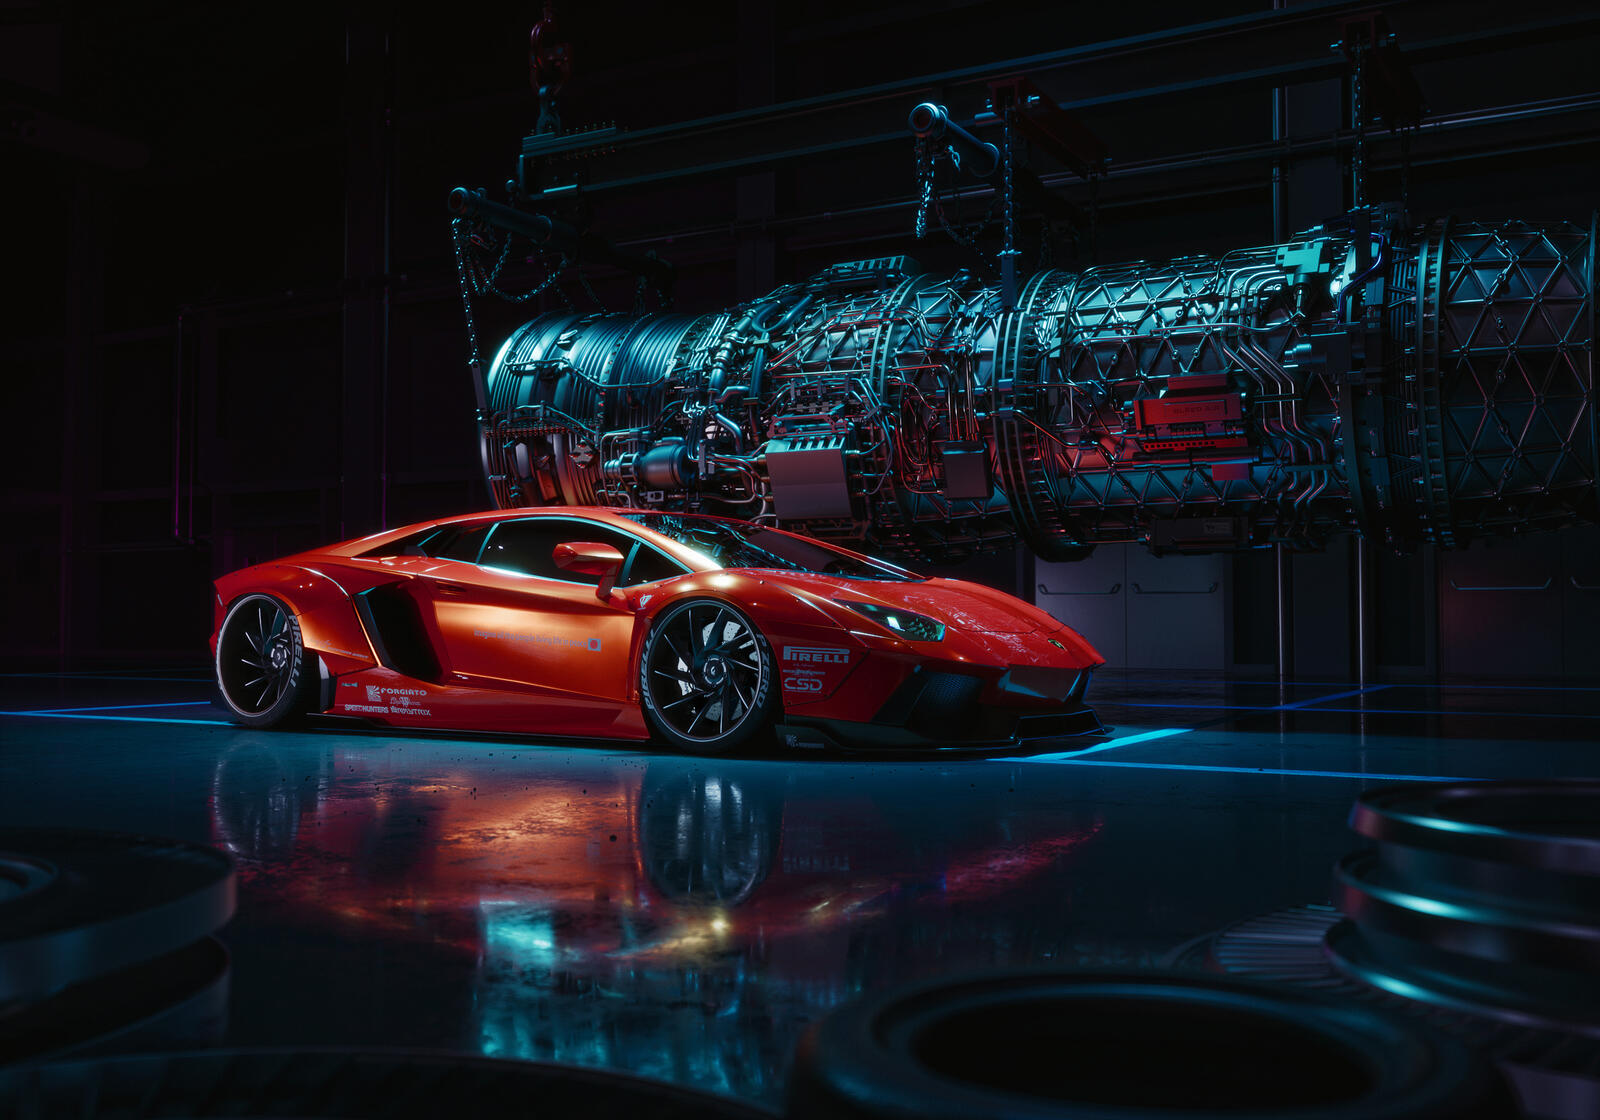 Wallpapers Lamborghini Aventador lamborghini behance on the desktop